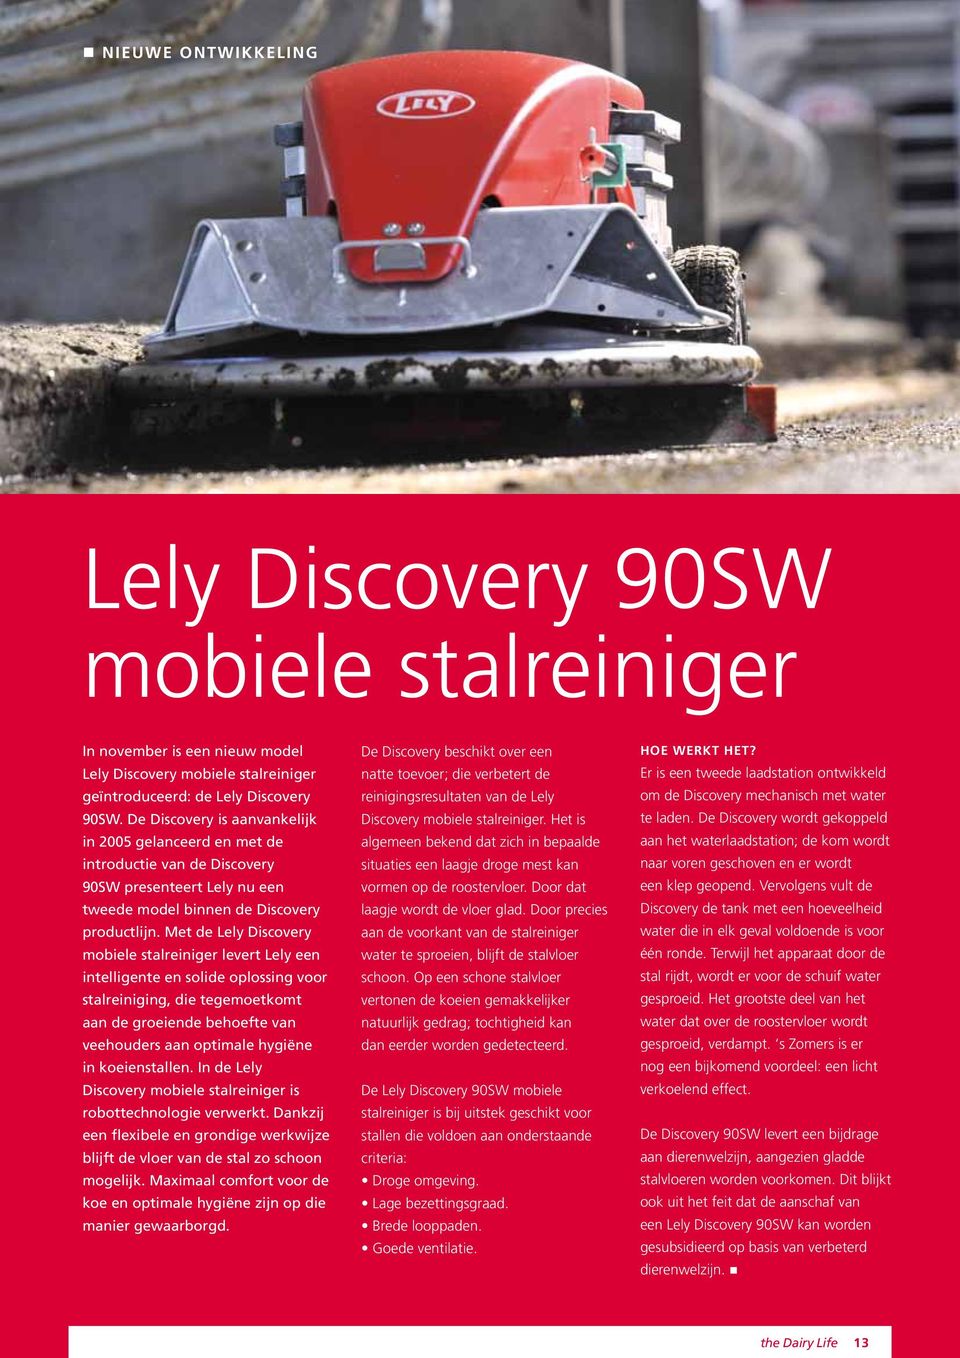 Met de Lely Discovery mobiele stalreiniger levert Lely een intelligente en solide oplossing voor stalreiniging, die tegemoetkomt aan de groeiende behoefte van veehouders aan optimale hygiëne in